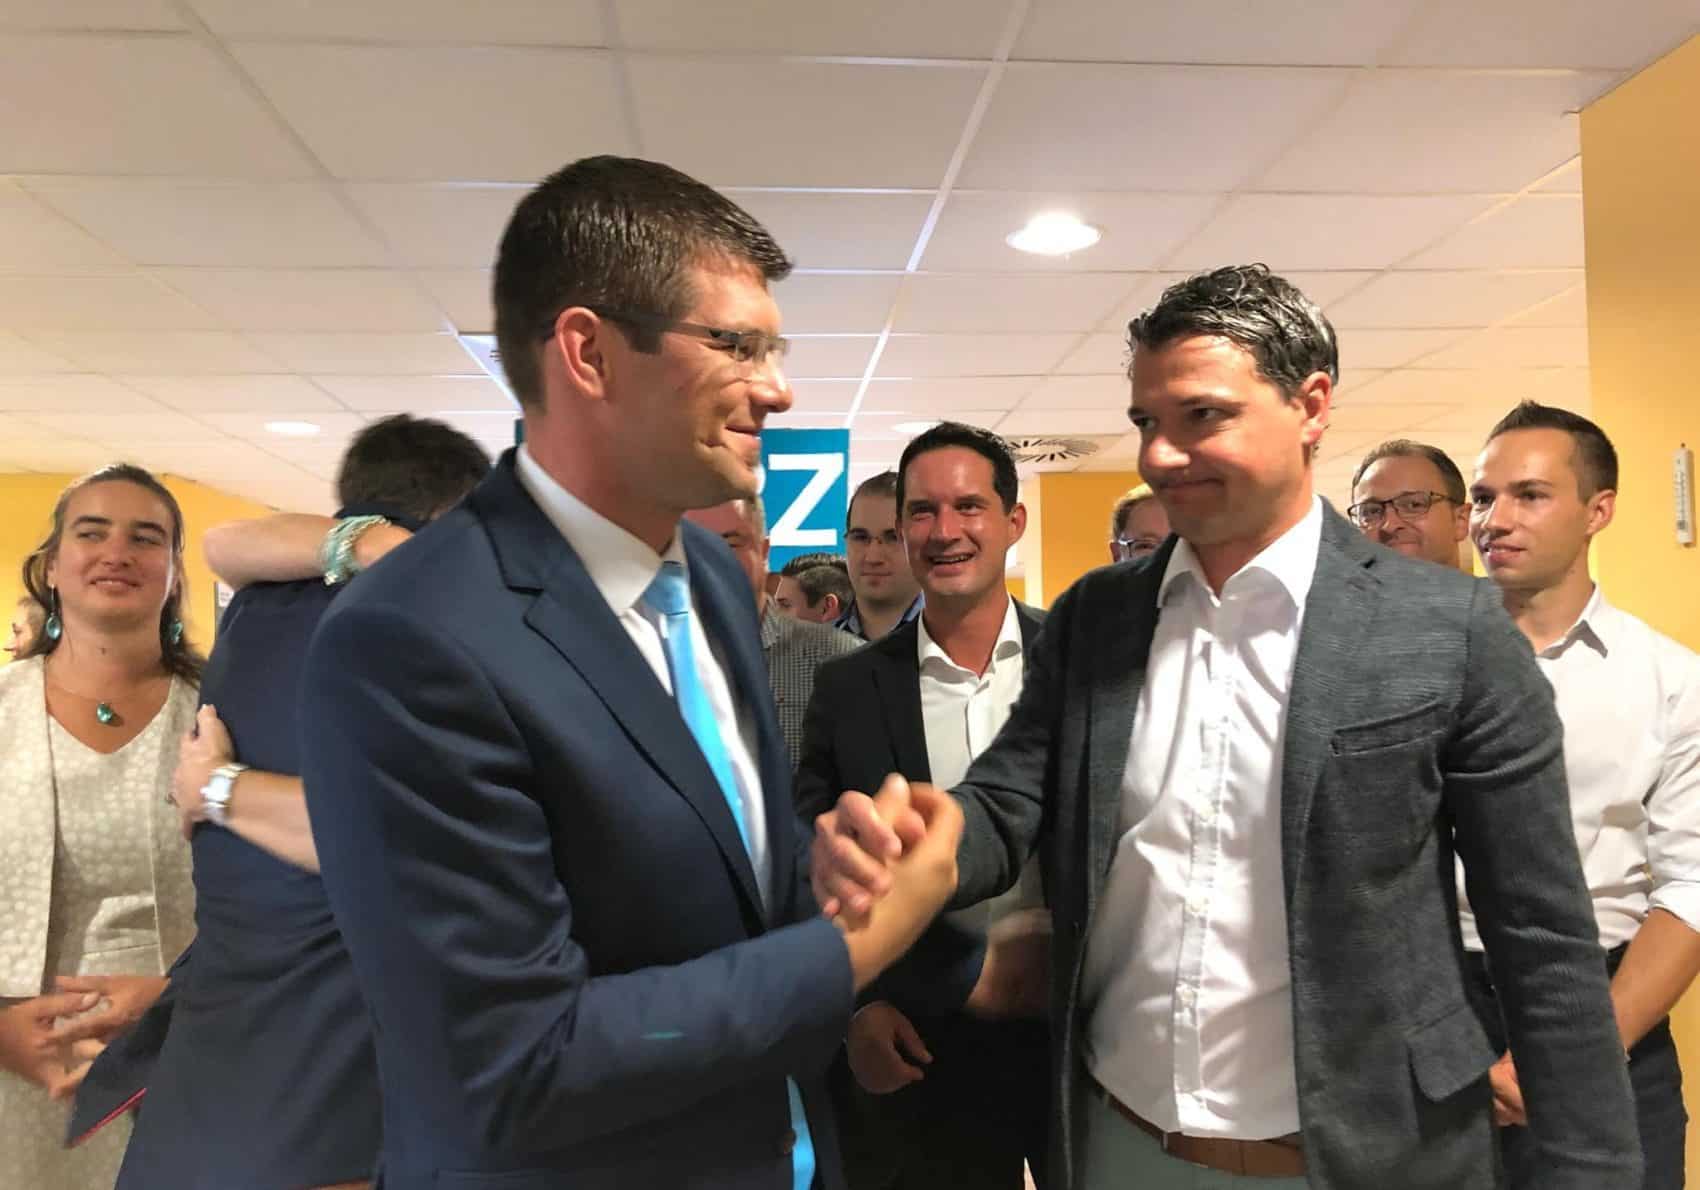 Die Freude bei der ÖVP über den Wahlsieg ist groß. Am Bild gratulieren sich Landesrat Martin Gruber (links) und ÖVP-Nationalratsabgeordneter Peter Weidinger.